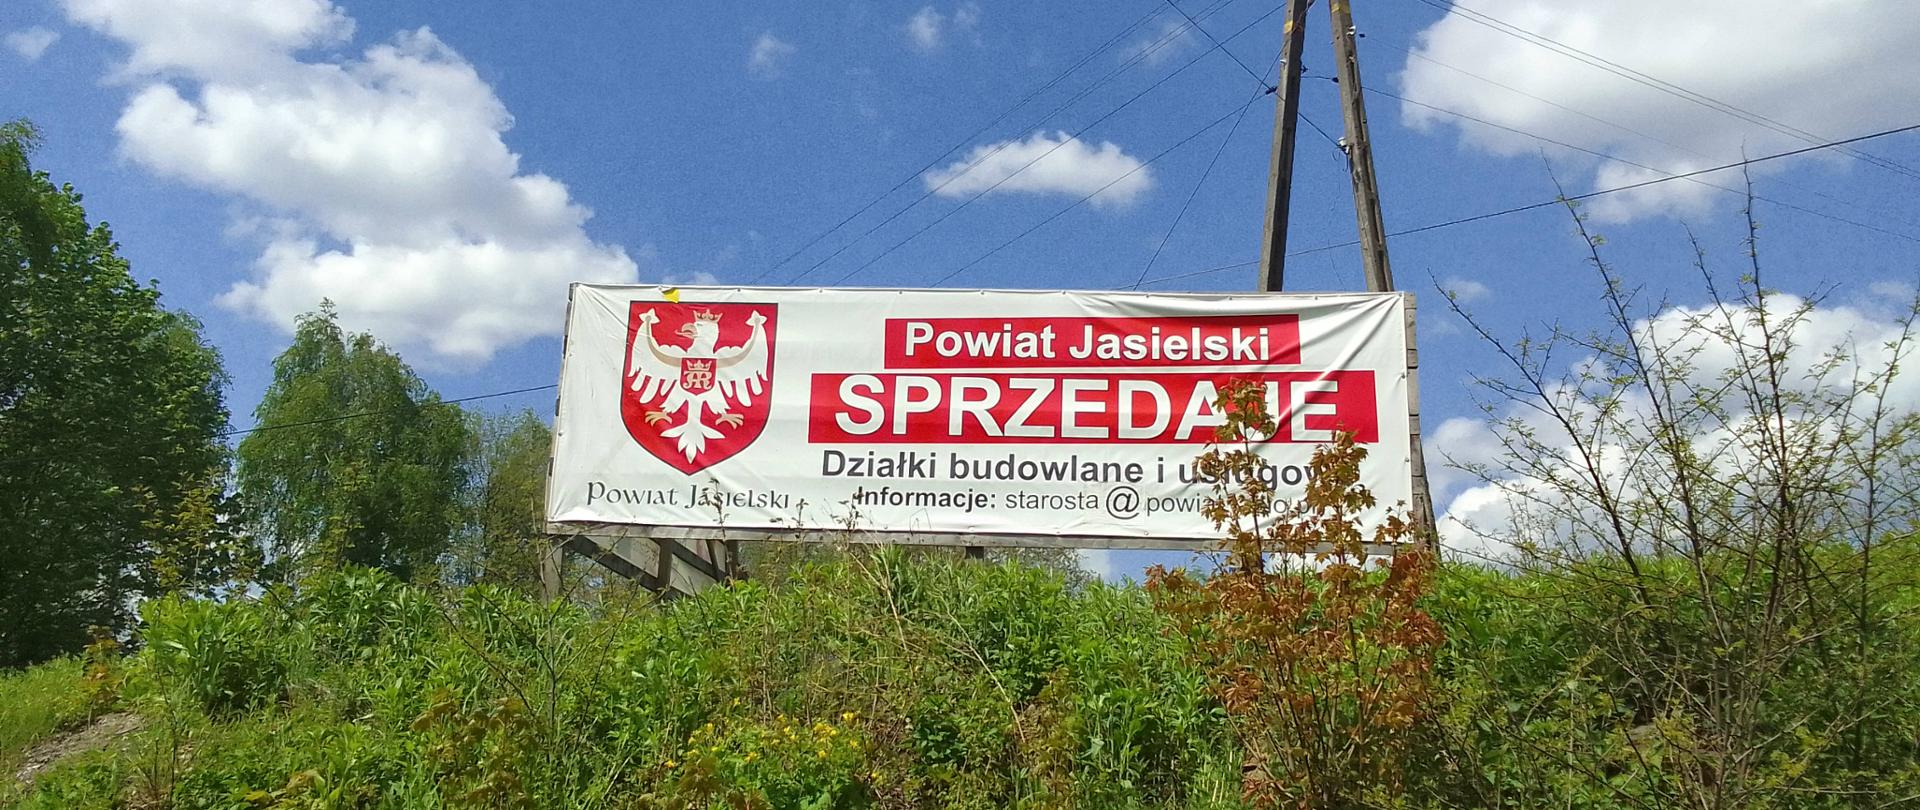 sprzedaż nieruchomości gruntowych niezabudowanych, stanowiących własność Powiatu Jasielskiego położonych w miejscowości Przysieki1